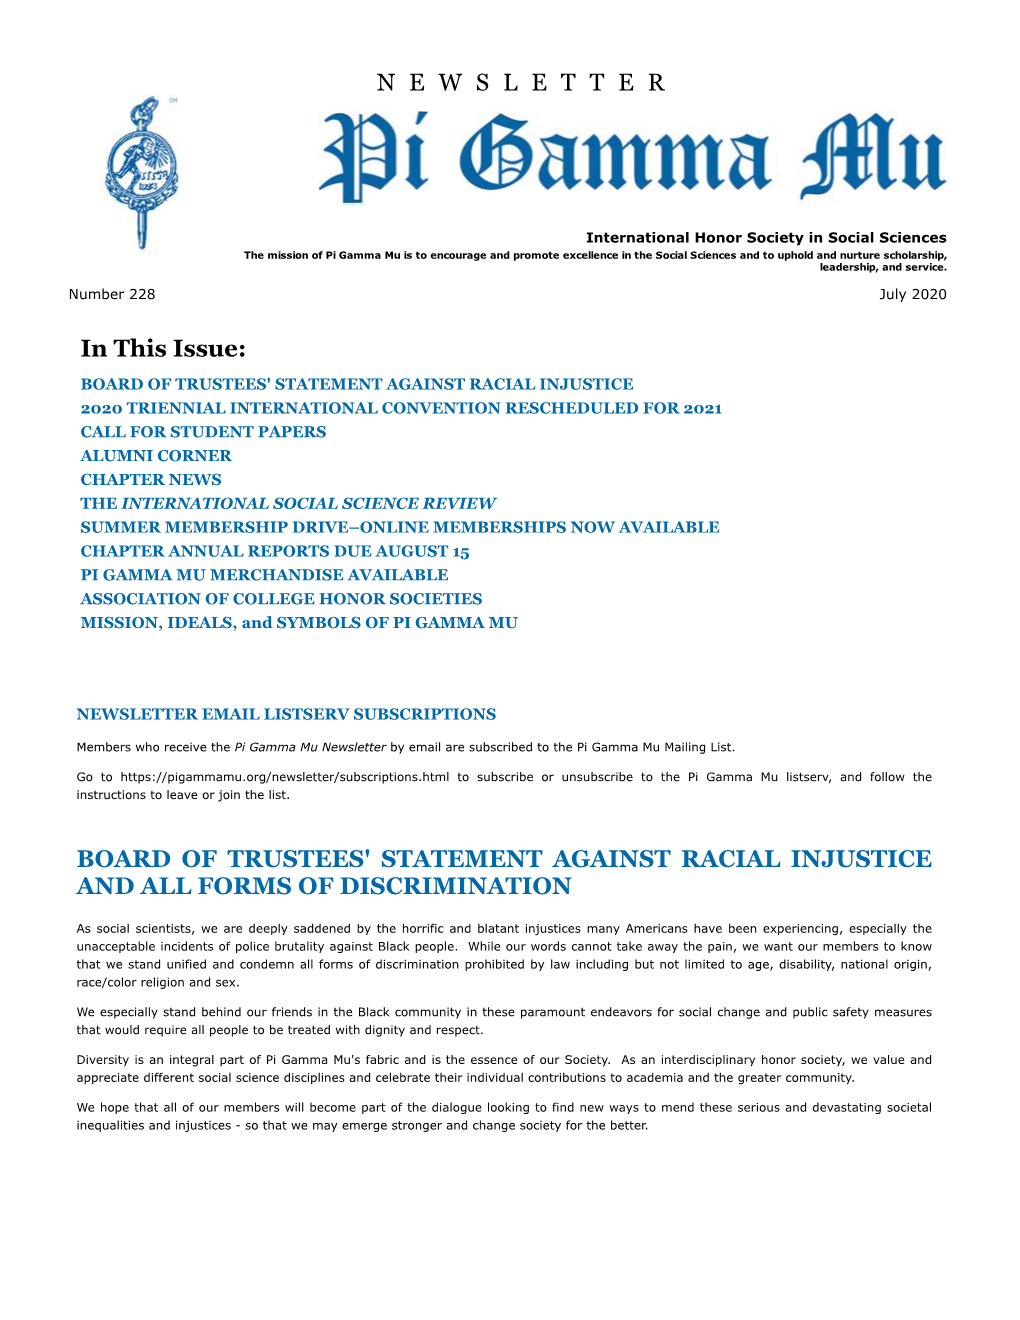 Pi Gamma Mu International Newsletter: July 2020